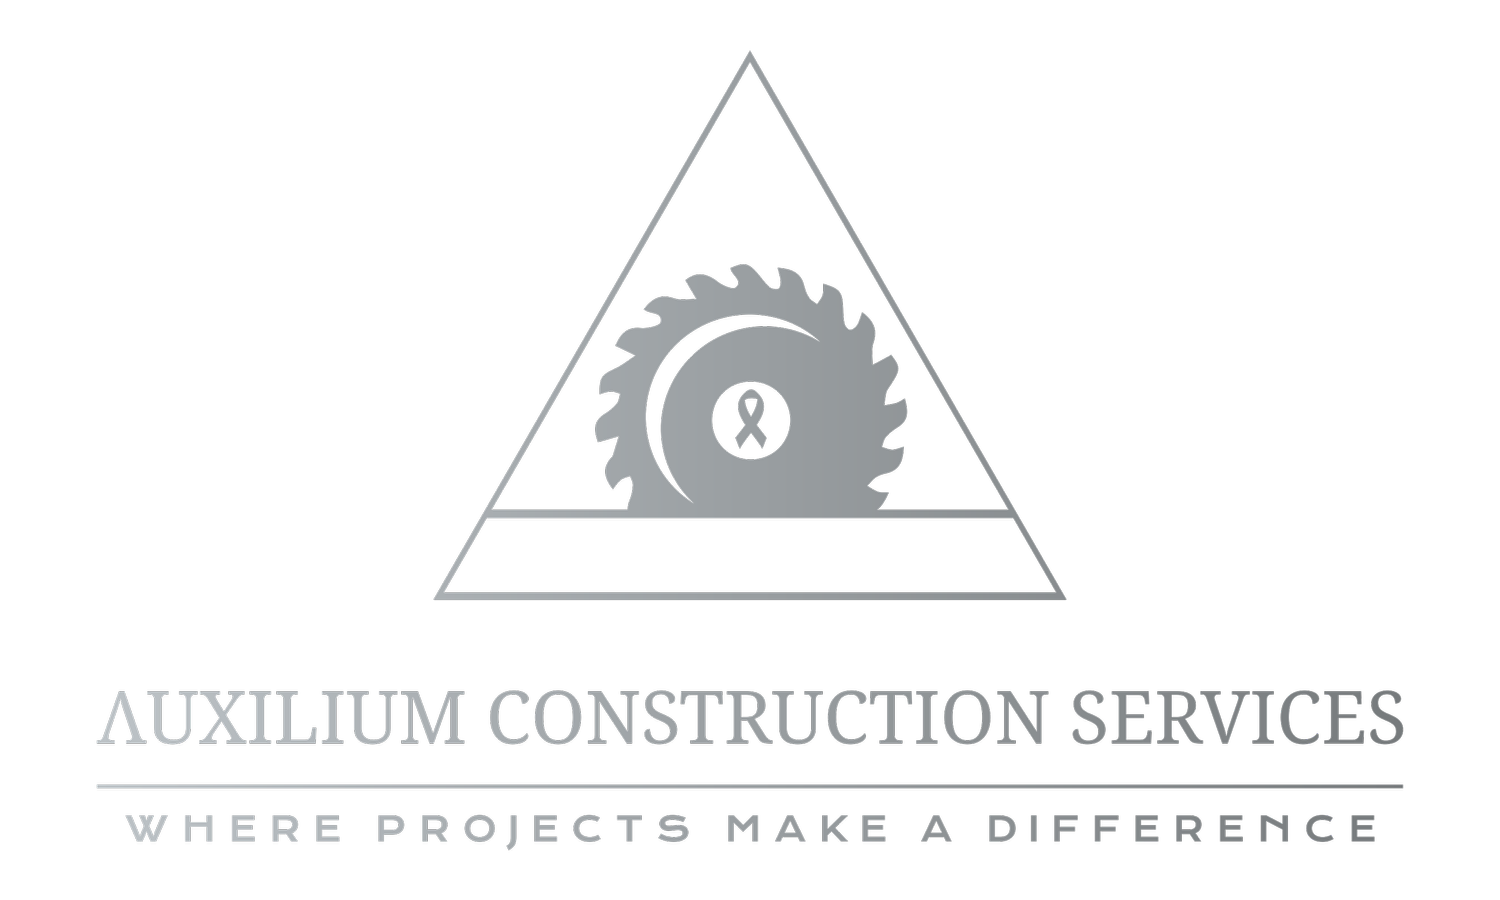 Auxilium Construction Services